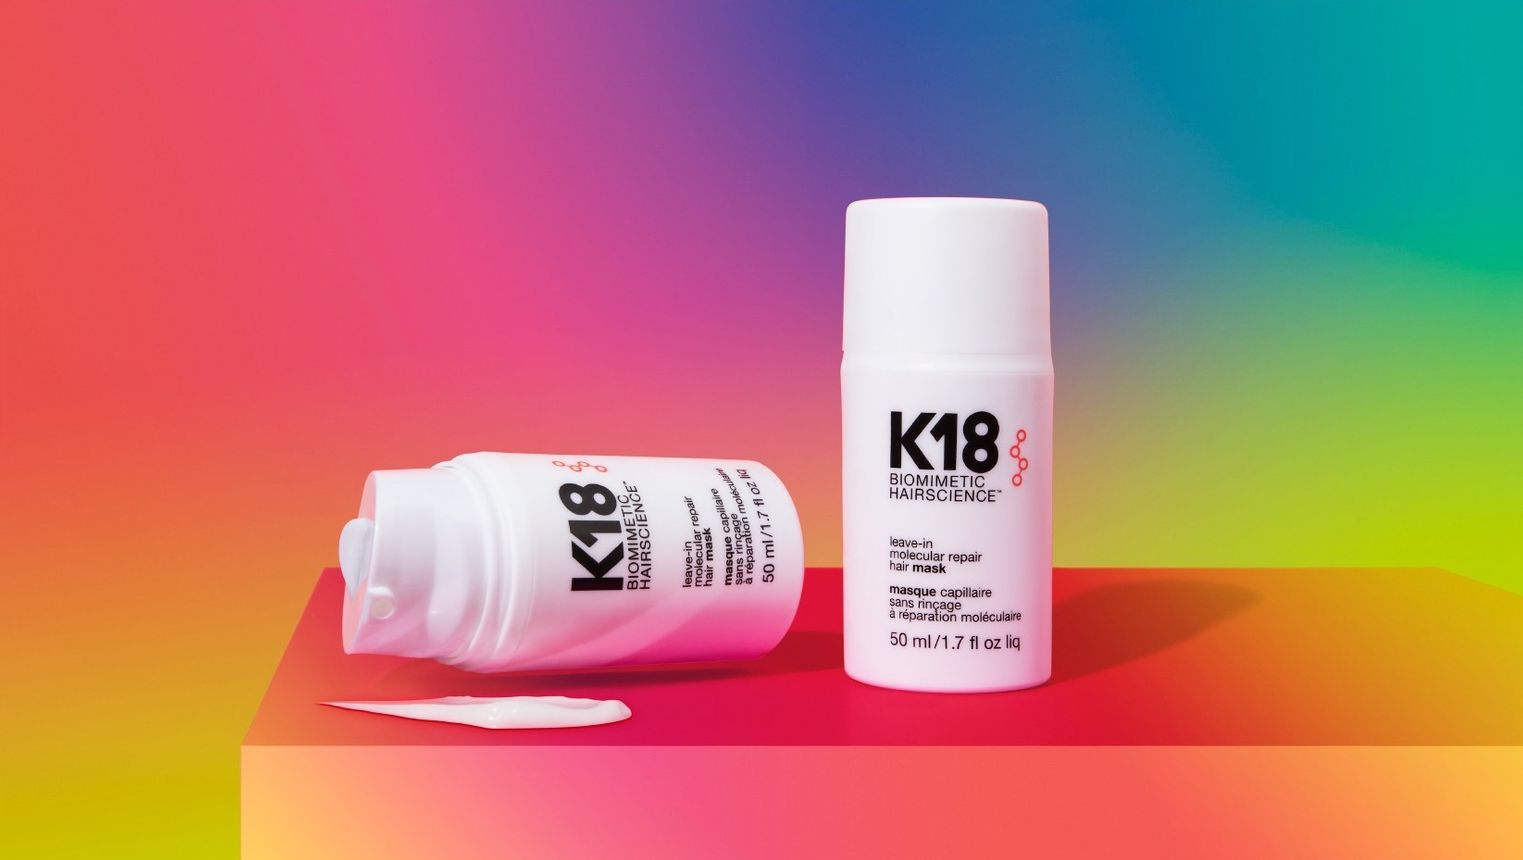 K18 leave-in hair mask